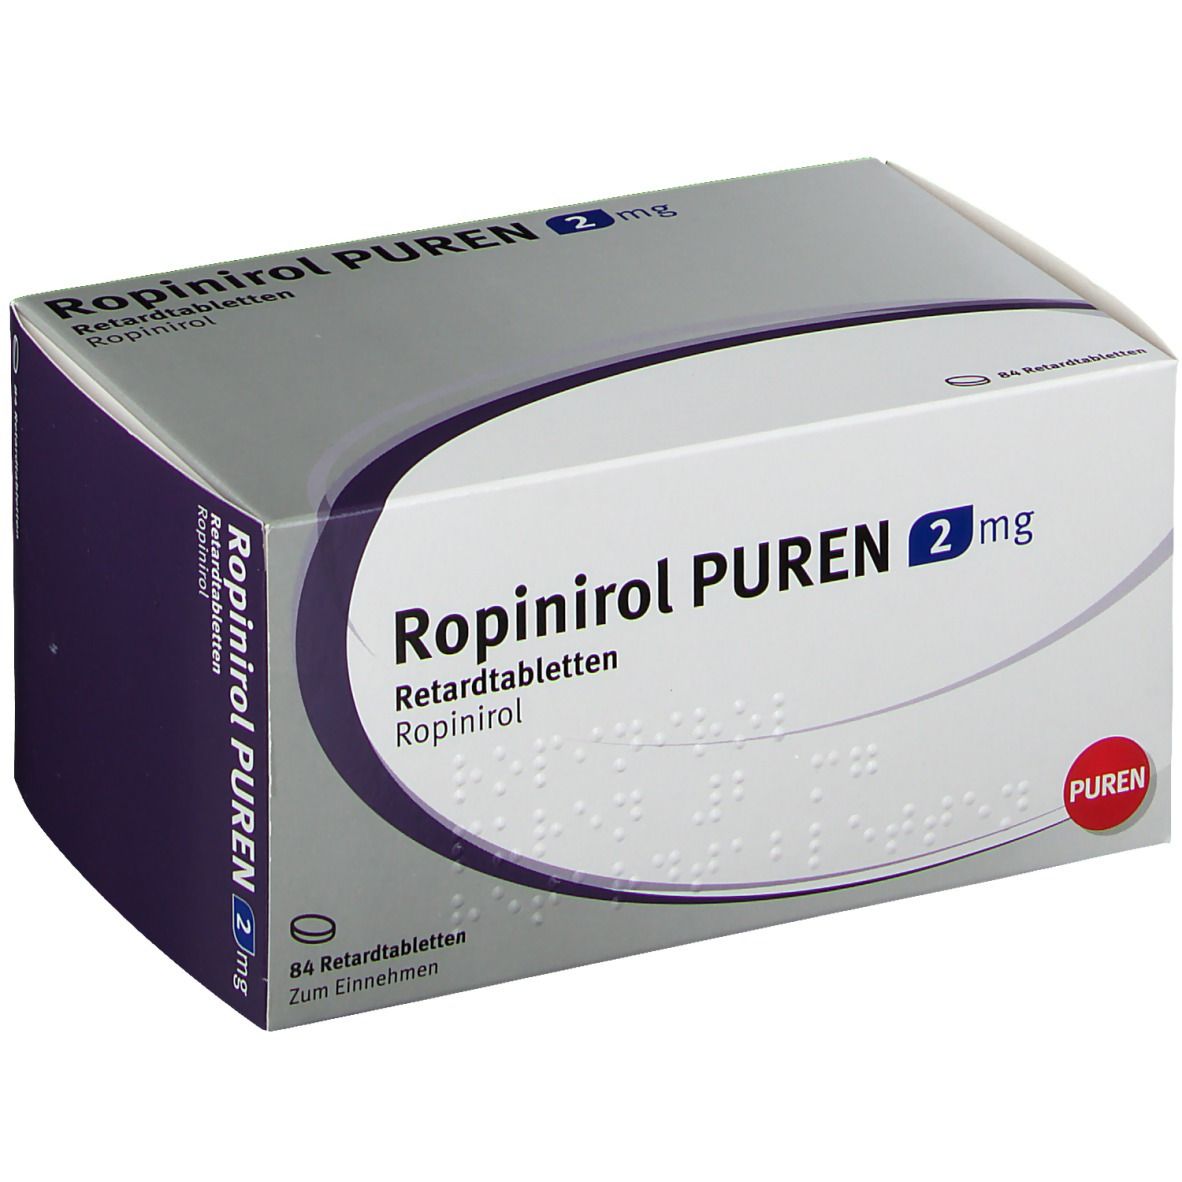 ROPINIROL PUREN 2 mg Retardtabletten